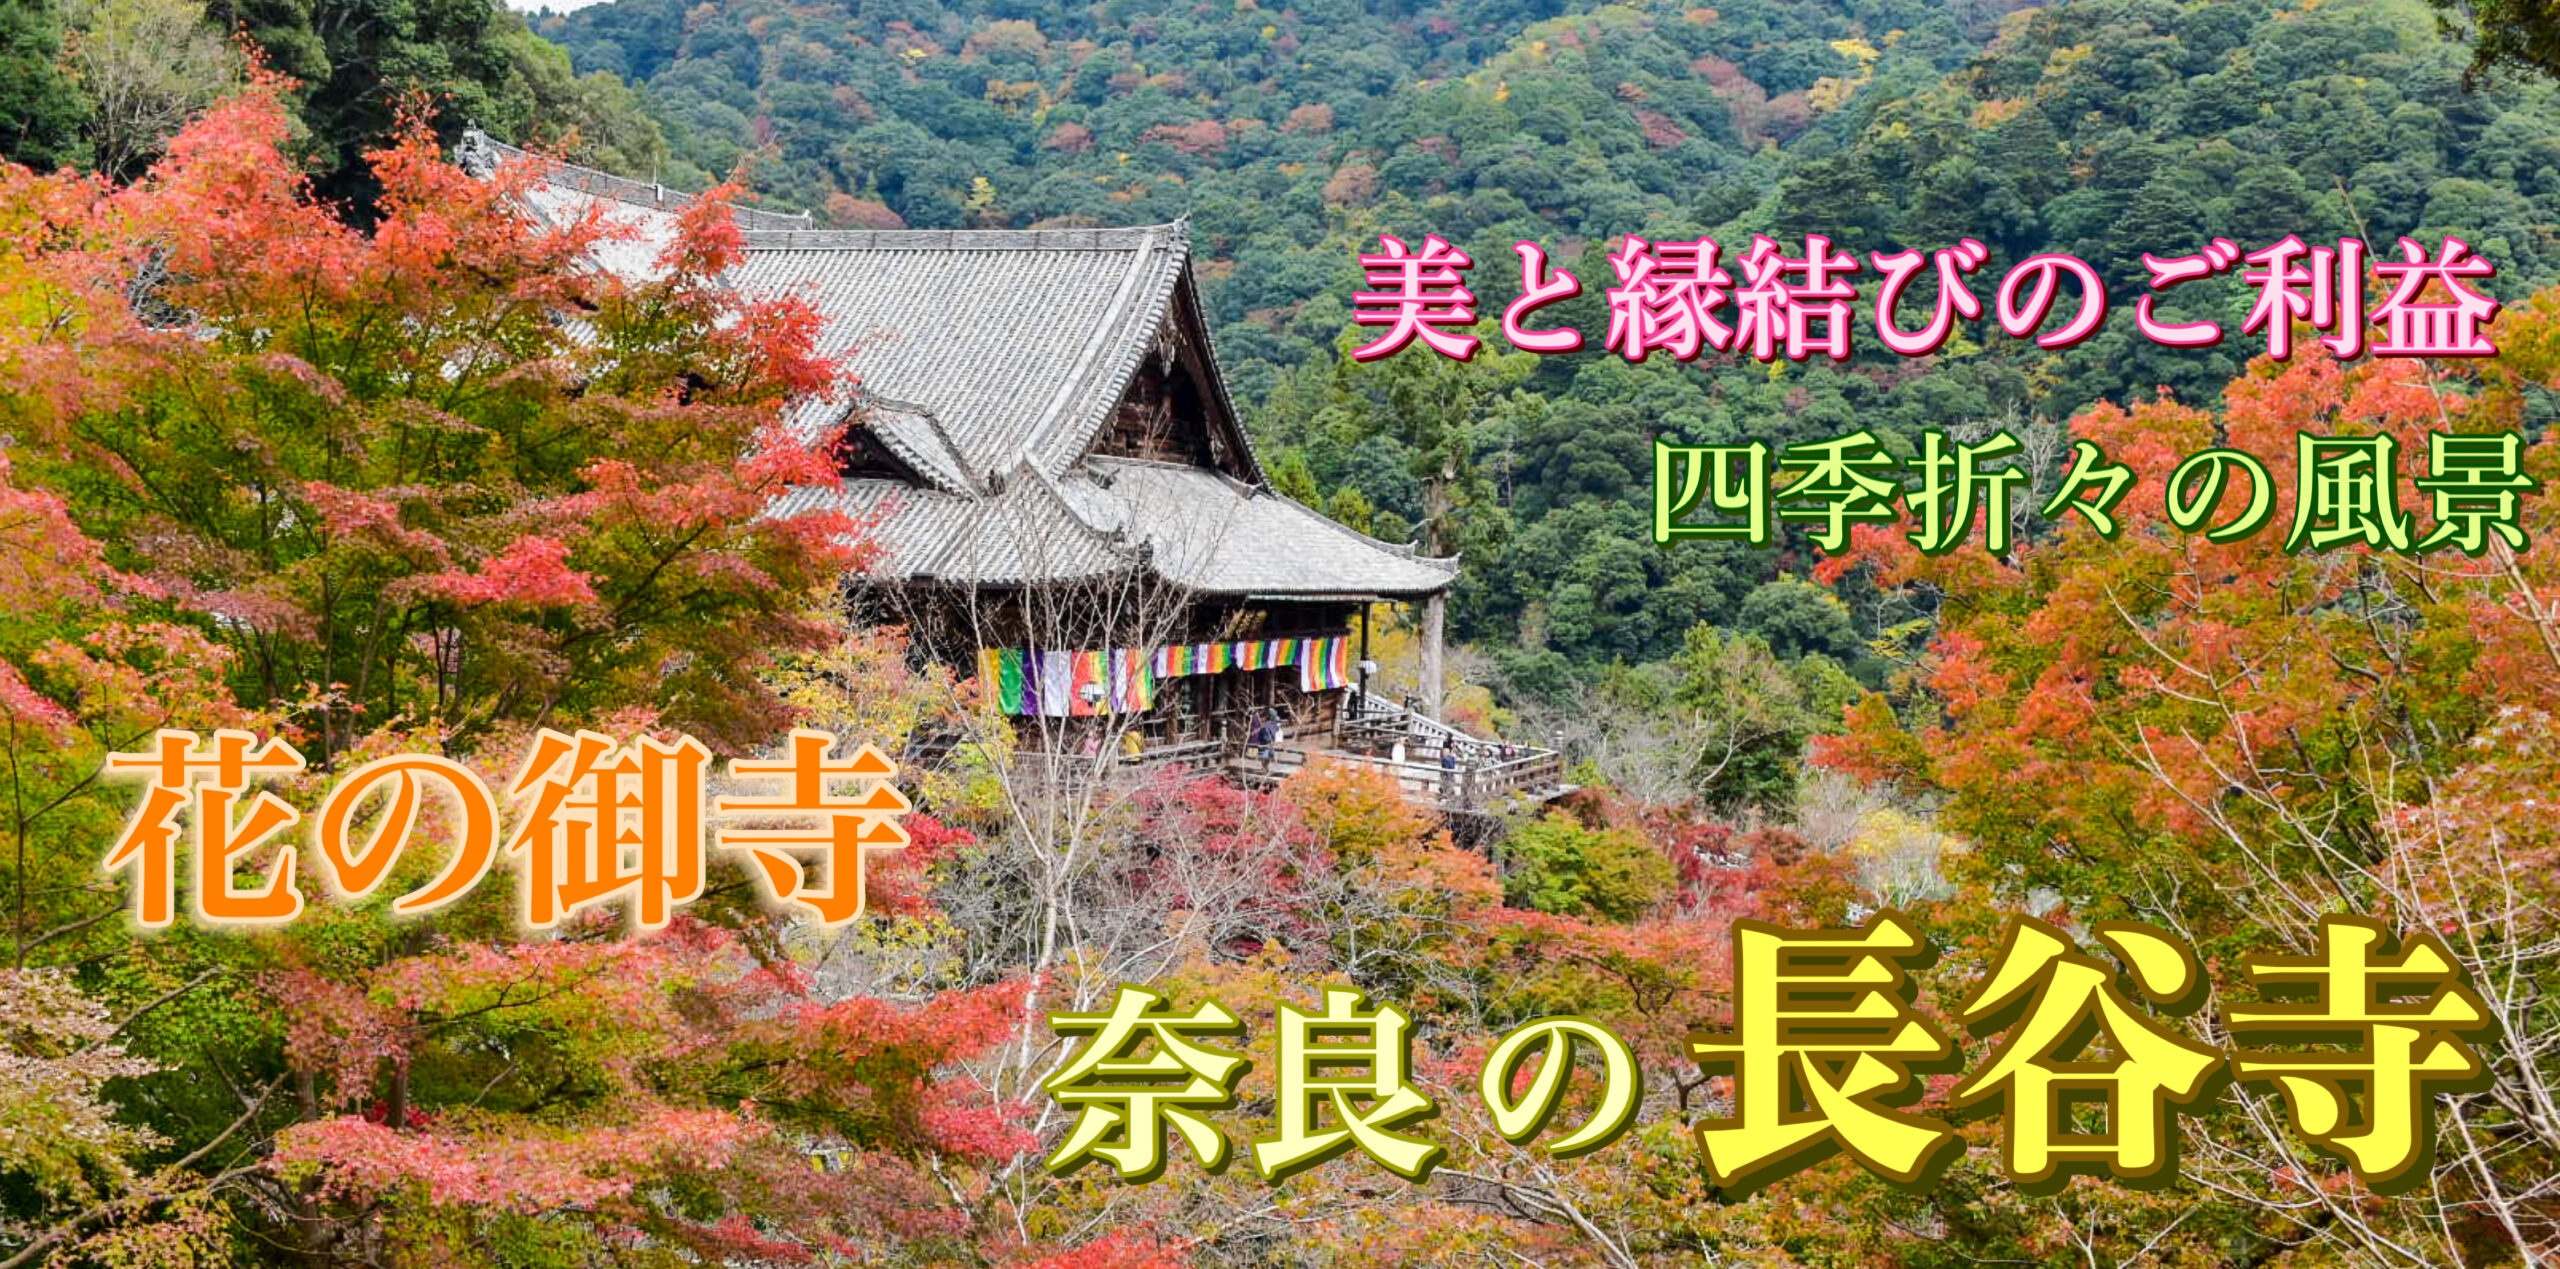 奈良・長谷寺の旅行_観光案内_見どころ・由来・アクセス